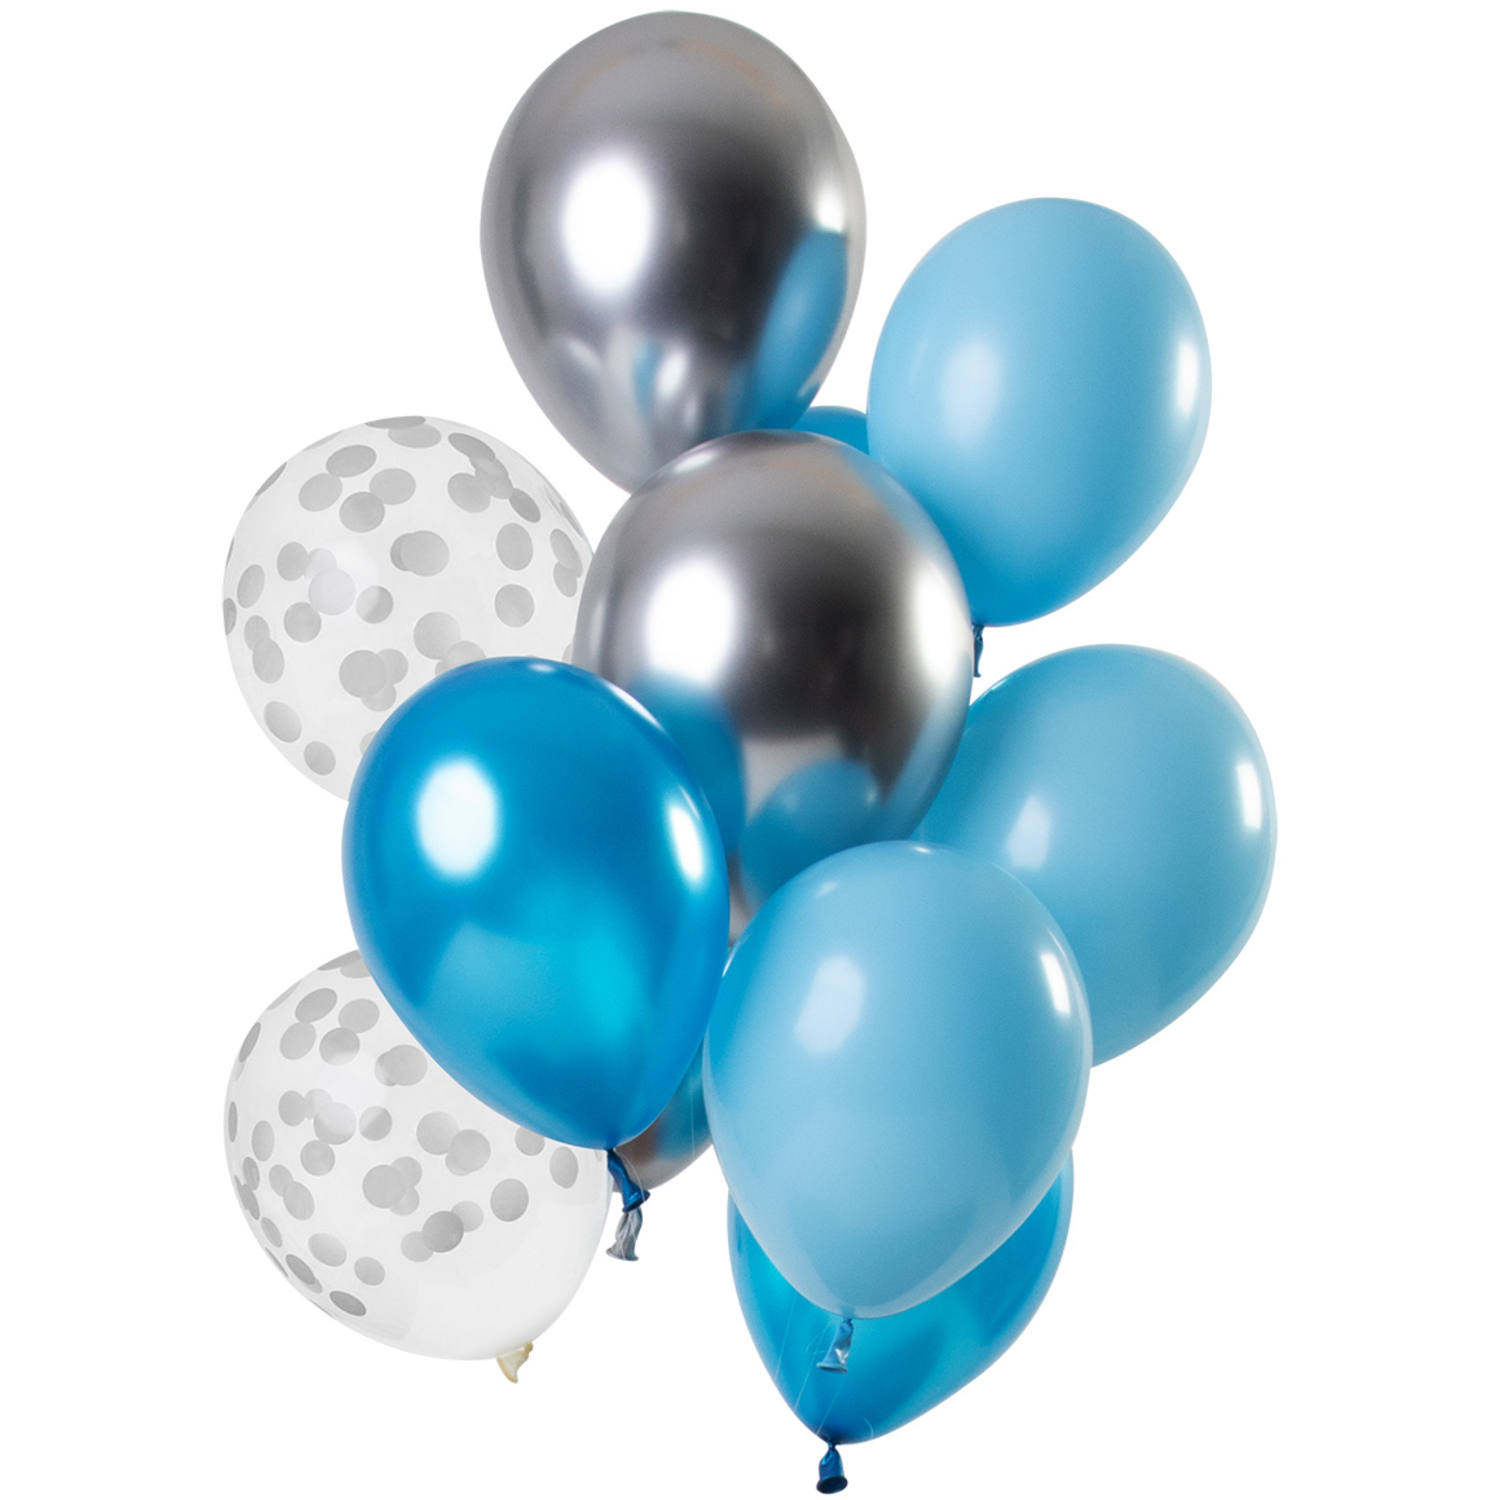 NEU Premium-Latex-Luftballons Aquamarine, 33cm, 12 Stk.